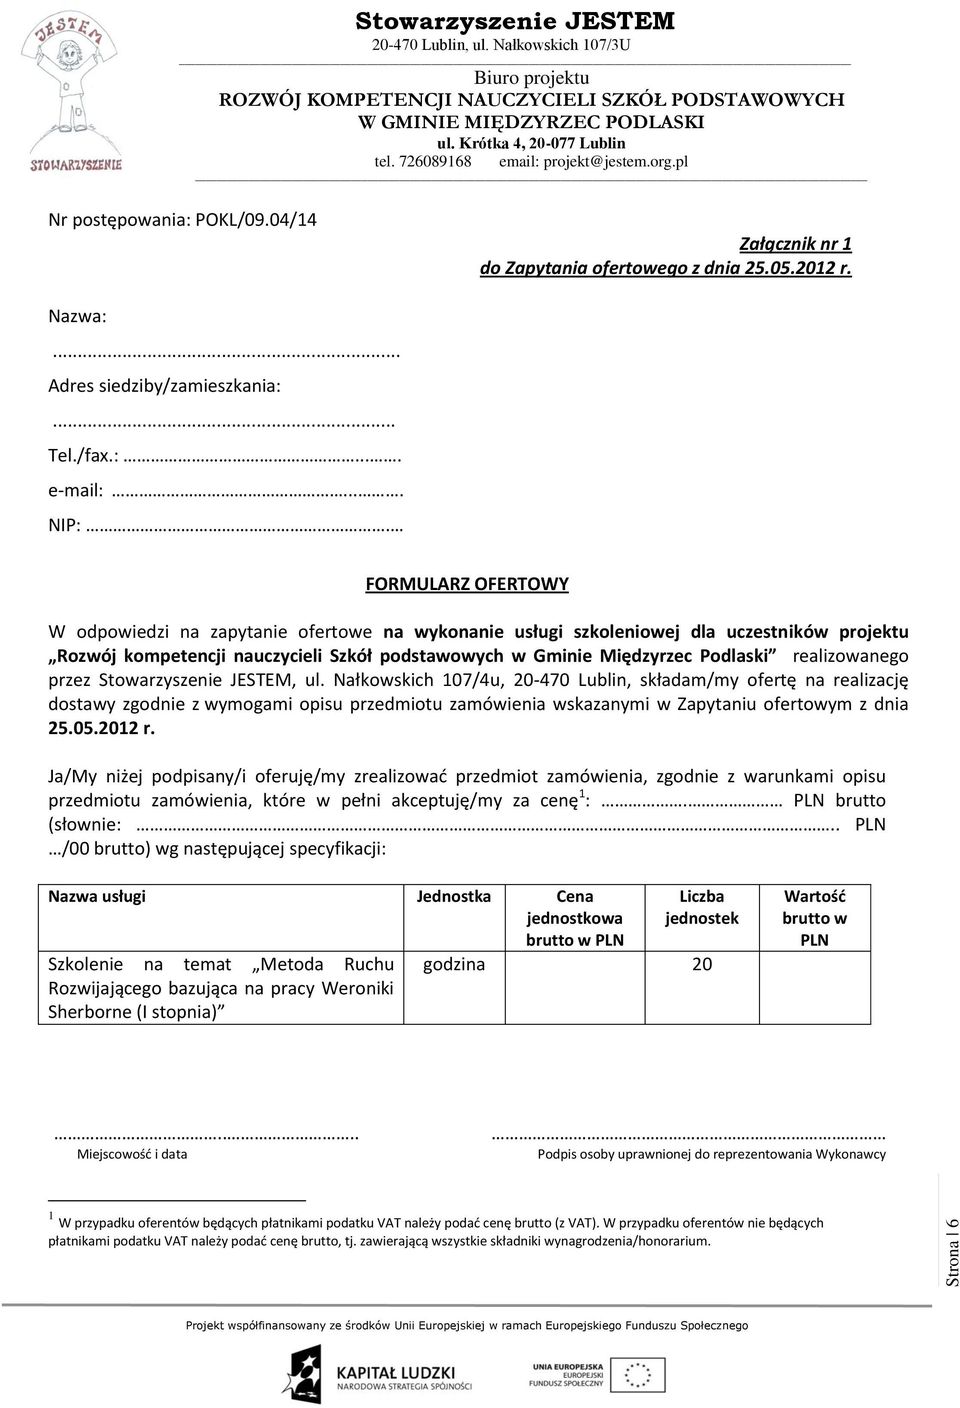 realizowanego przez, ul. Nałkowskich 107/4u, 20-470 Lublin, składam/my ofertę na realizację dostawy zgodnie z wymogami opisu przedmiotu zamówienia wskazanymi w Zapytaniu ofertowym z dnia 25.05.2012 r.